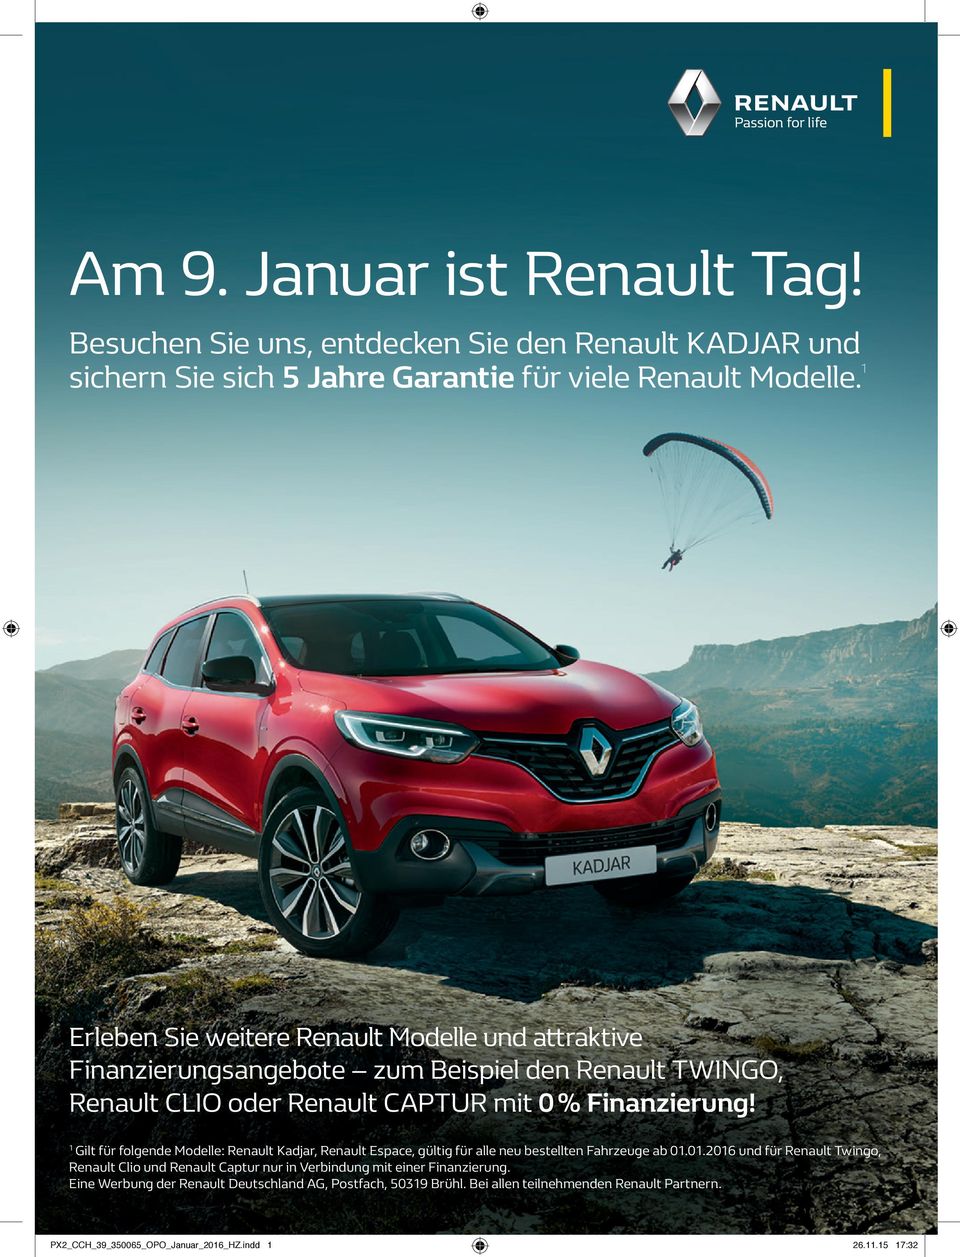 Gilt für folgende Modelle: Renault Kadjar, Renault Espace, gültig für alle neu bestellten Fahrzeuge ab 0.